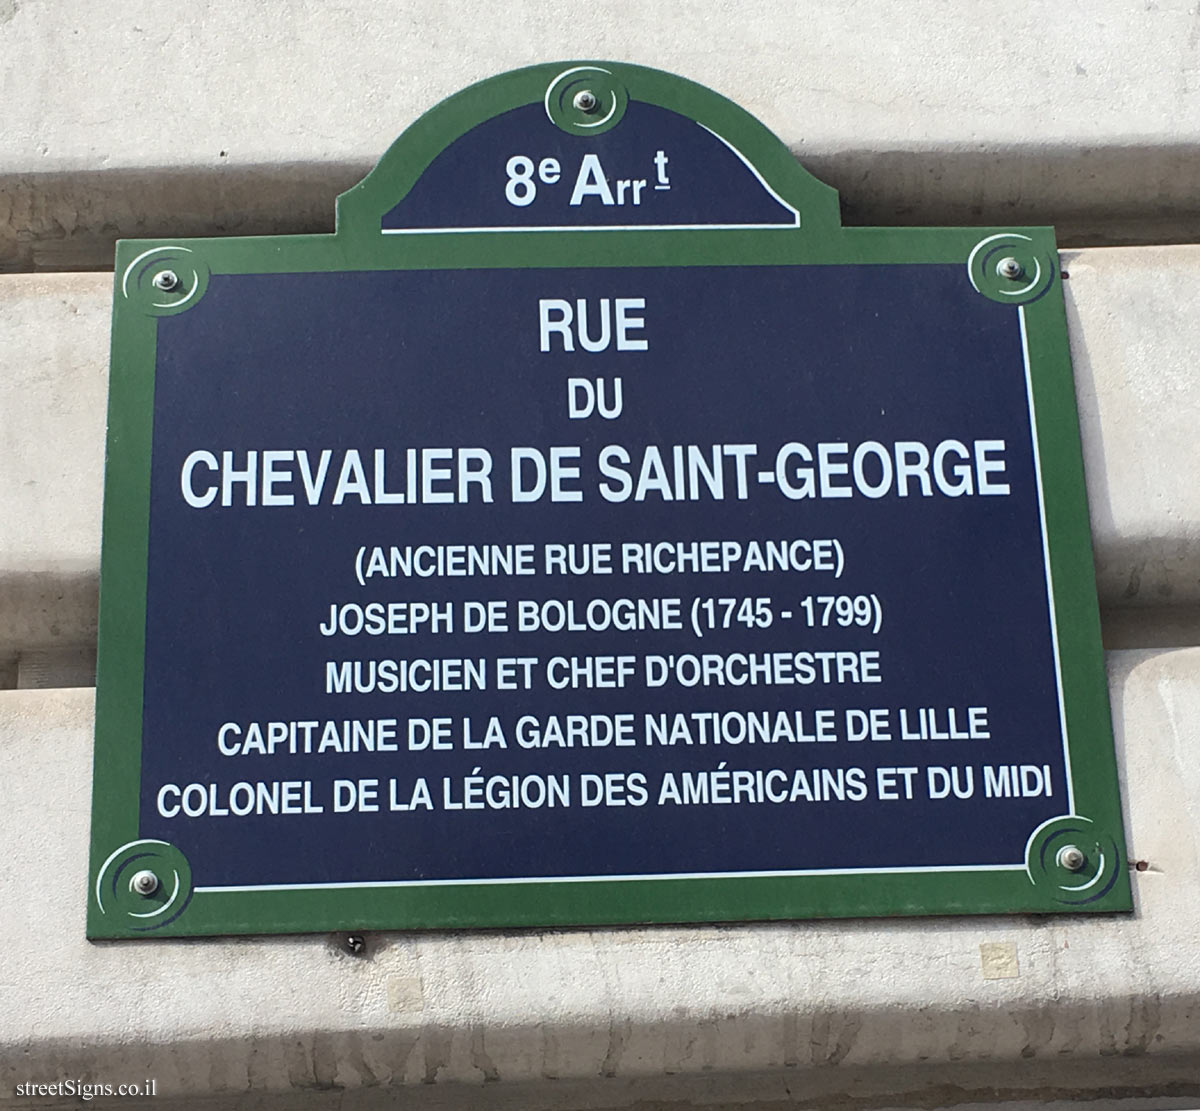 Paris - 8th arrondissement - Rue du Chevalier de Saint-George